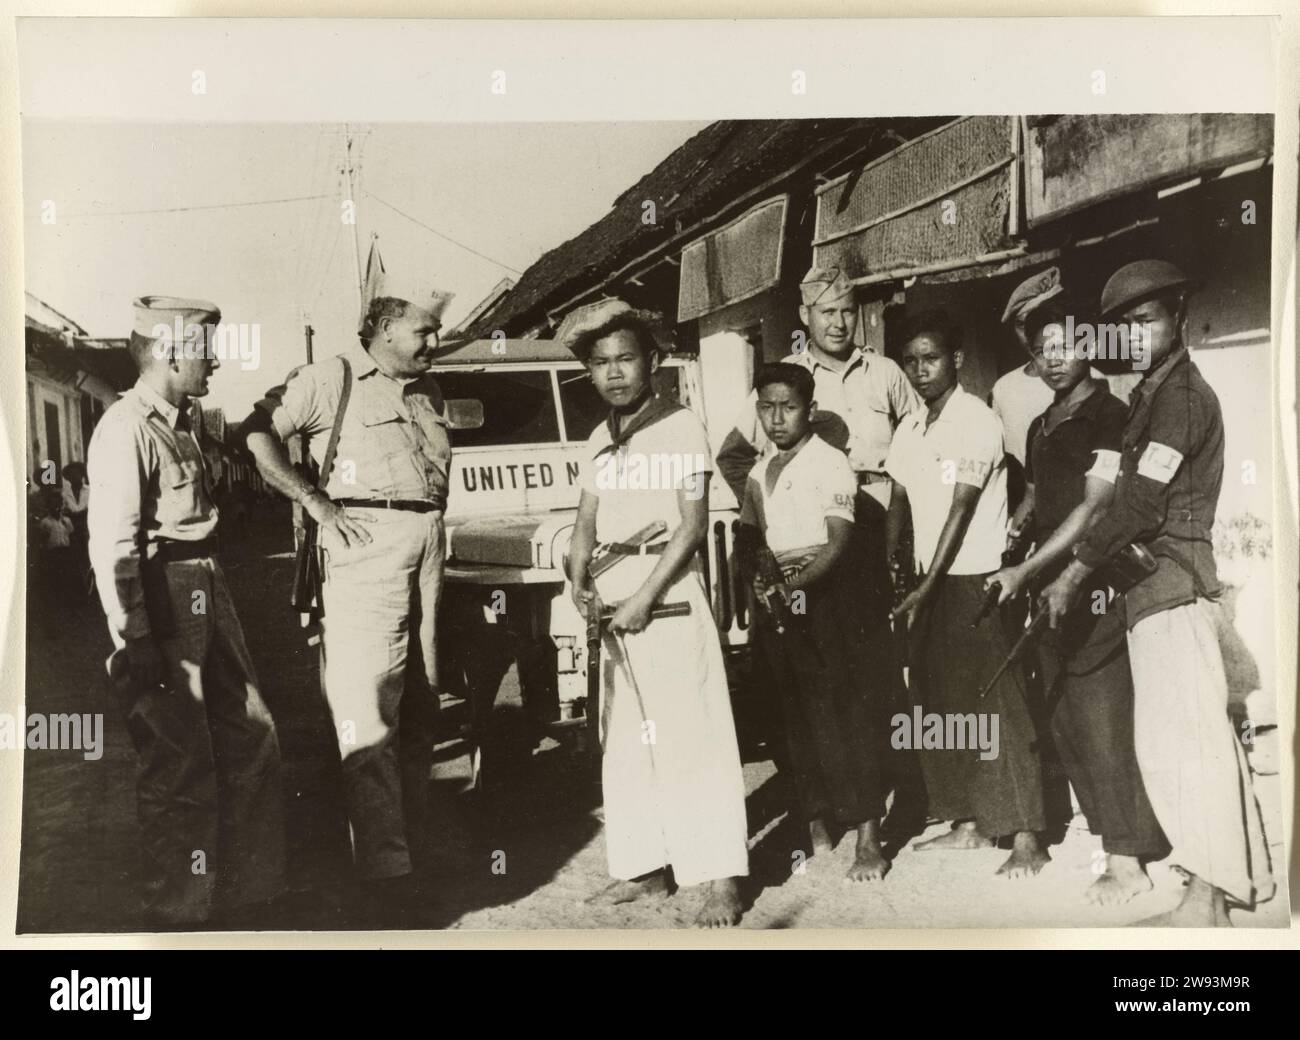 Republikanische Guerillas übernehmen das Dorf Kotagede, 1948–1949 Dokumentarfotos drei Militärbeobachter der Vereinten Nationen und eine Gruppe republikanischer Soldaten befinden sich in einer Straße in Kotagede mit einem UN-Jeep im Hintergrund. Indonesien fotografische Unterstützung Indonesiens Stockfoto